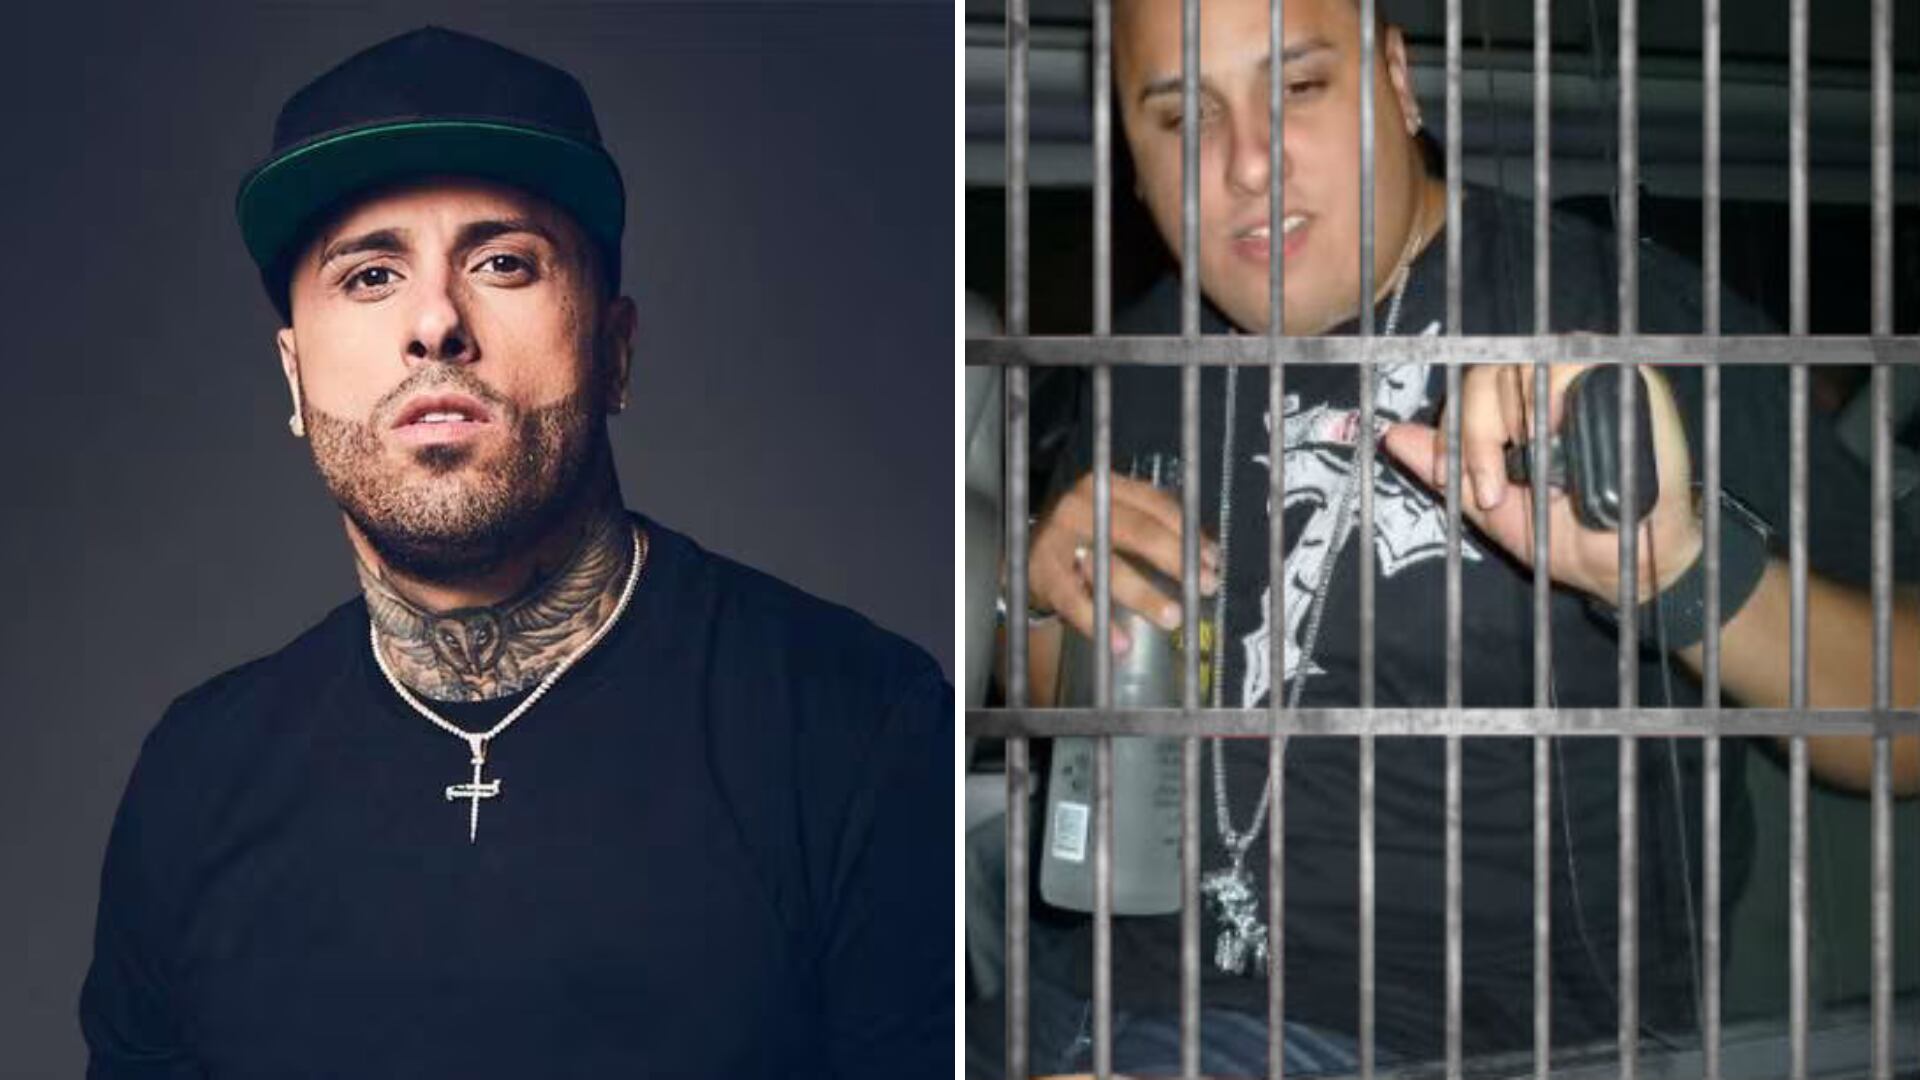 Jesús Antonio Alonso Jiménez, alias 'Nicky Jam' en el mundo del crimen, fue condenado a una pena de prisión por su historial delictivo, tomó el nombre del reconocido artista puertorriqueño - crédito redes sociales